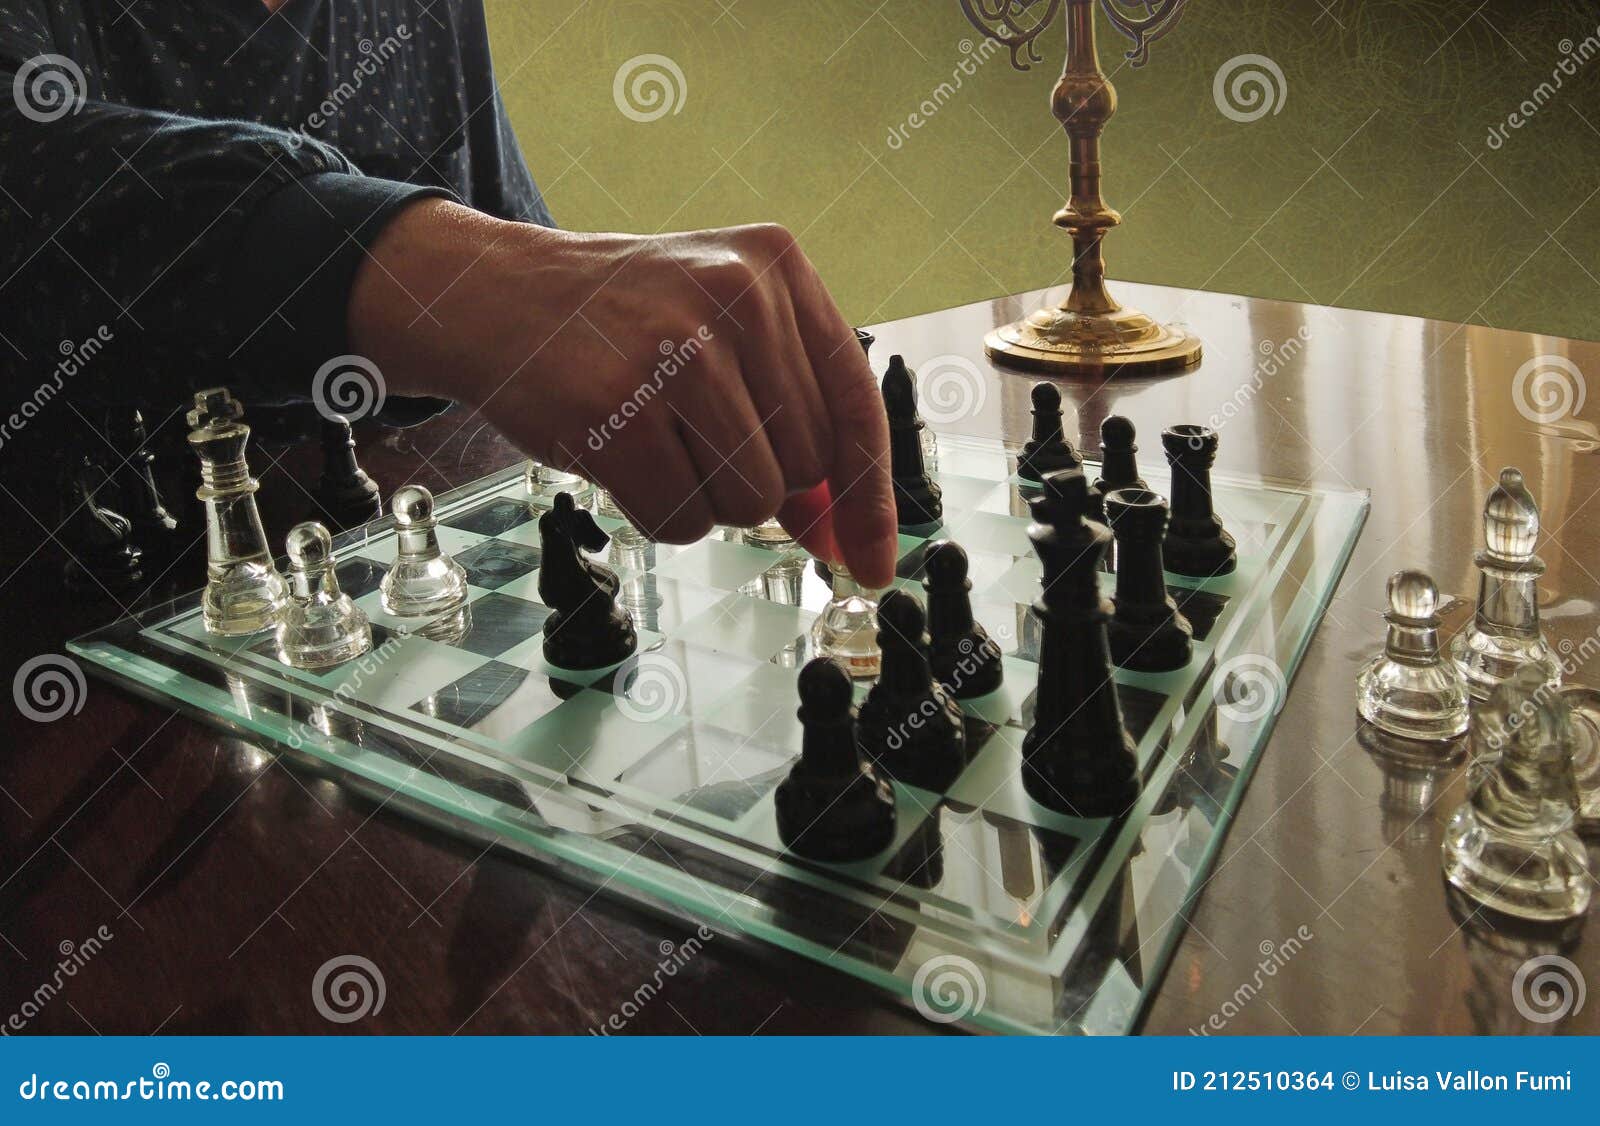 Pessoa jogando xadrez, imagem conceitual de uma mulher de